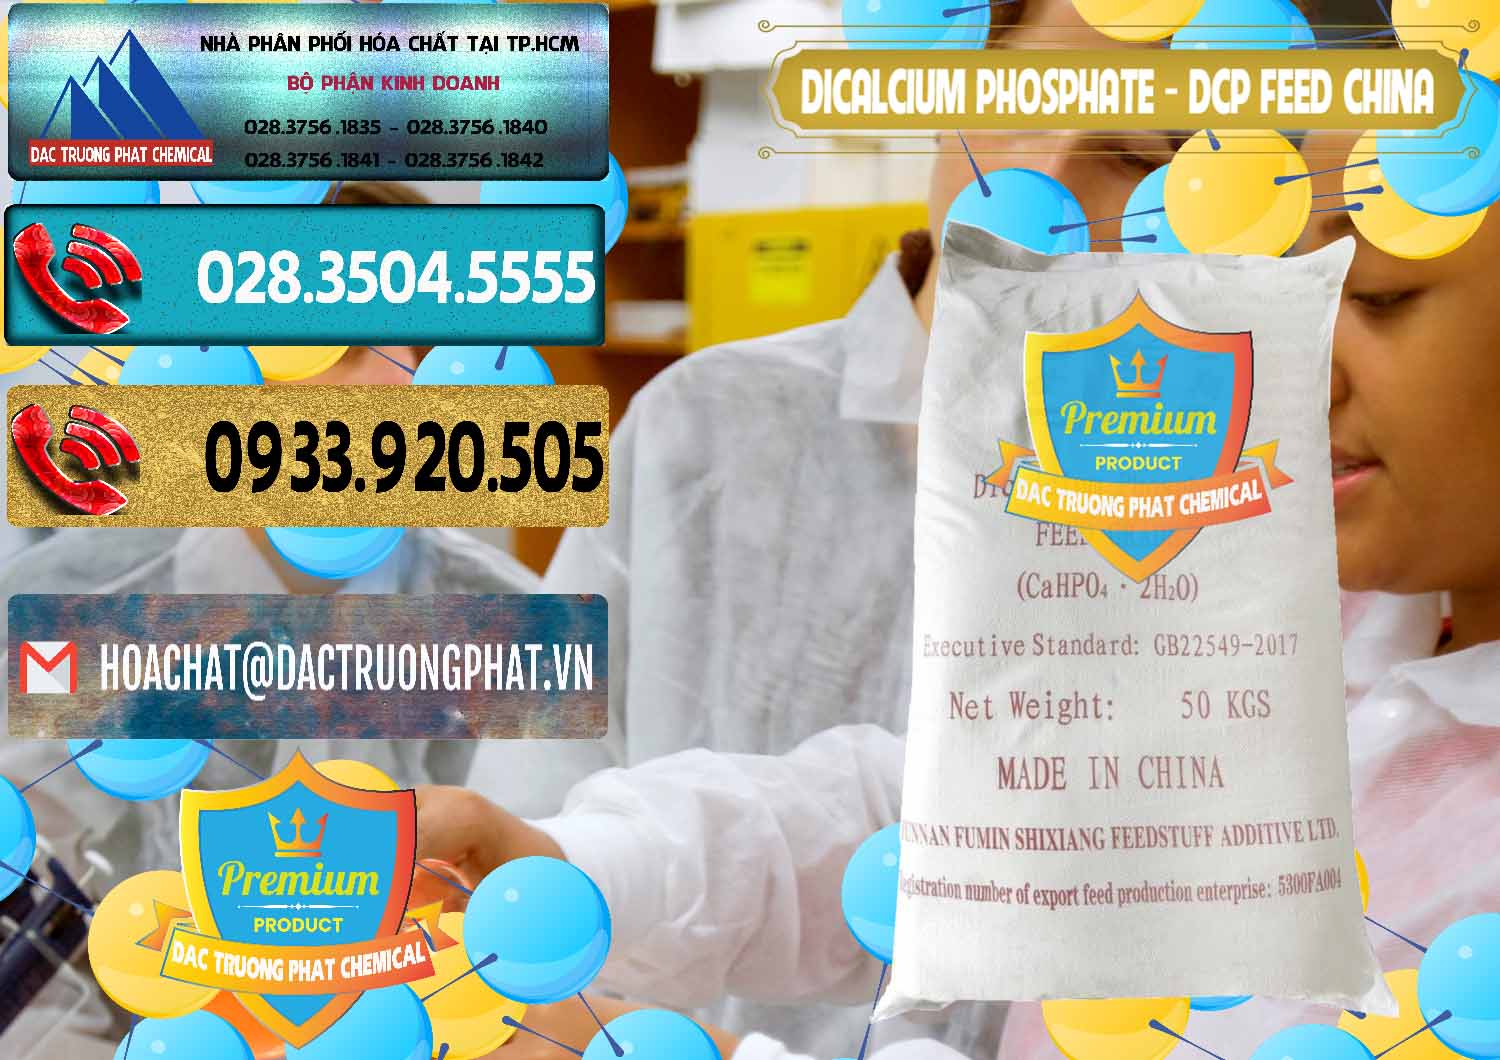 Chuyên bán _ cung ứng Dicalcium Phosphate - DCP Feed Grade Trung Quốc China - 0296 - Nơi chuyên cung ứng _ phân phối hóa chất tại TP.HCM - hoachatdetnhuom.com